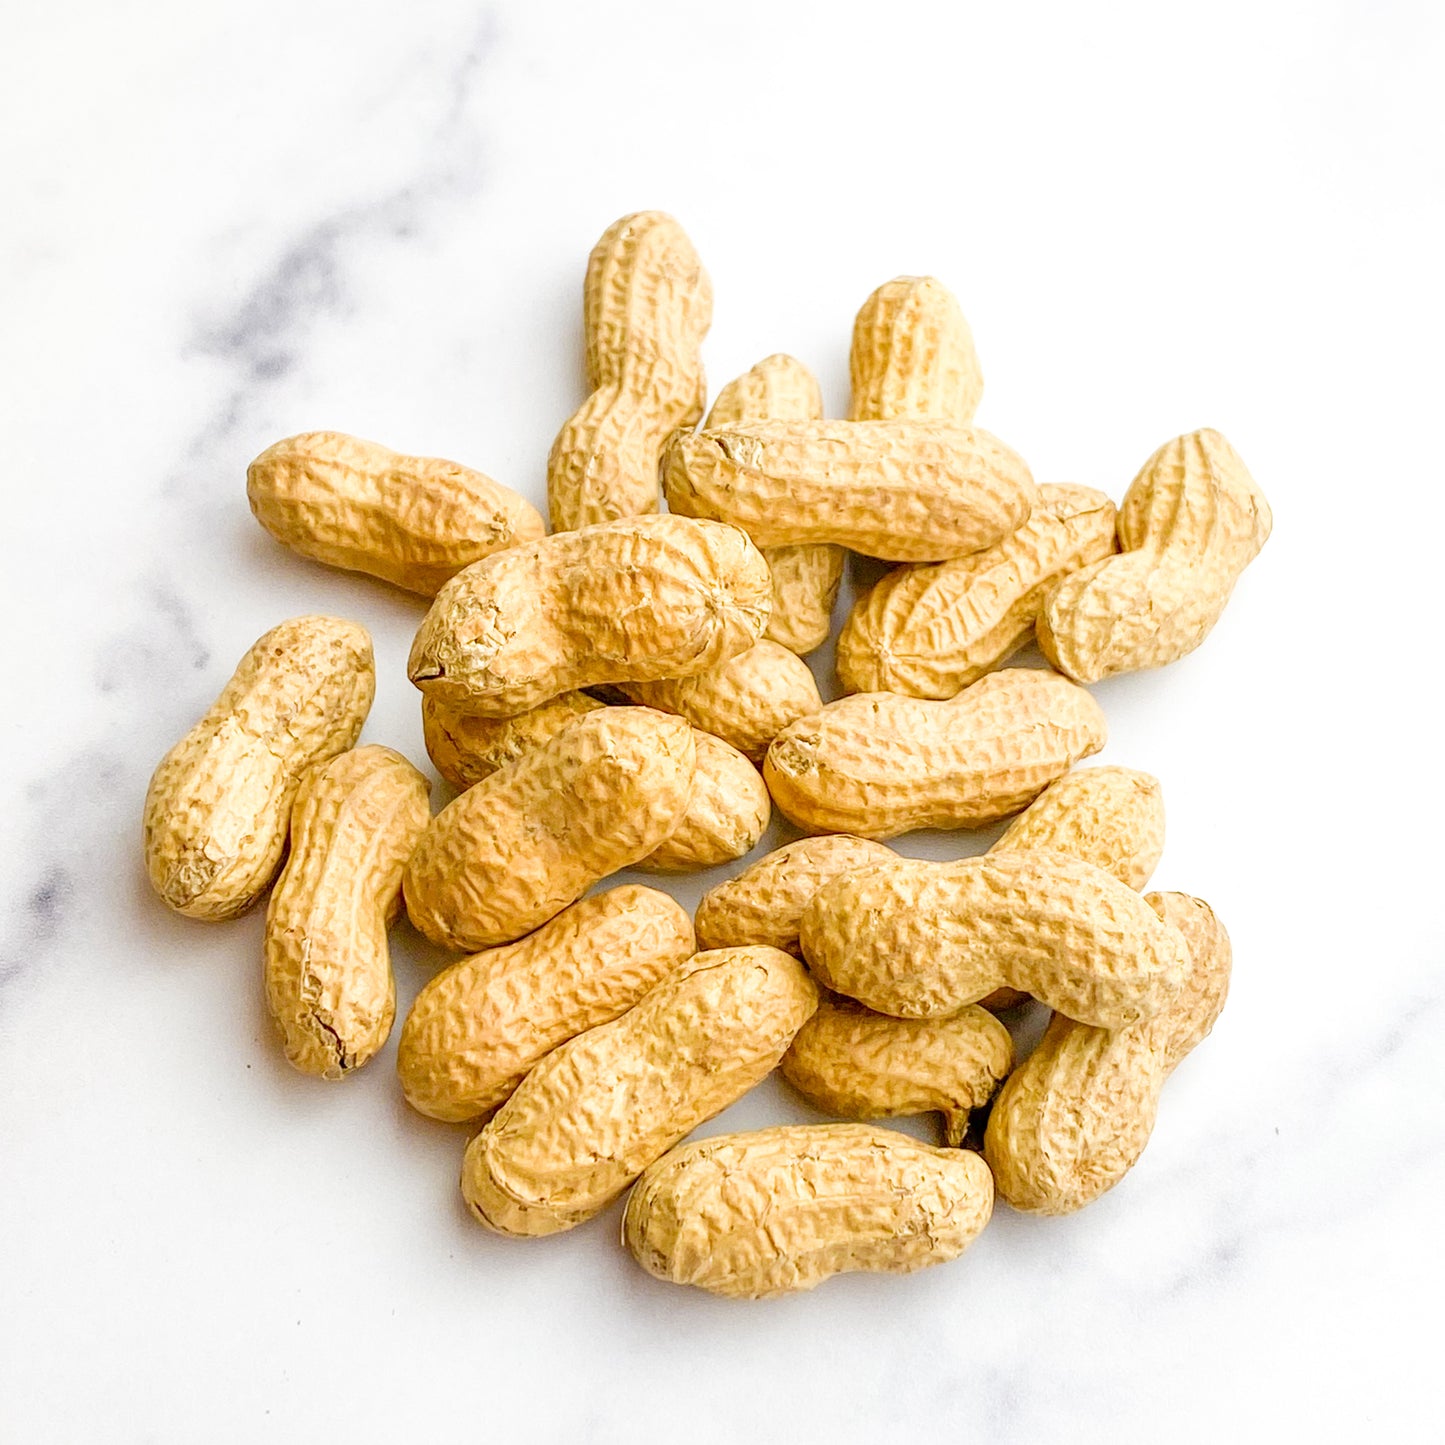 Fresh Roasted Peanuts - Regular